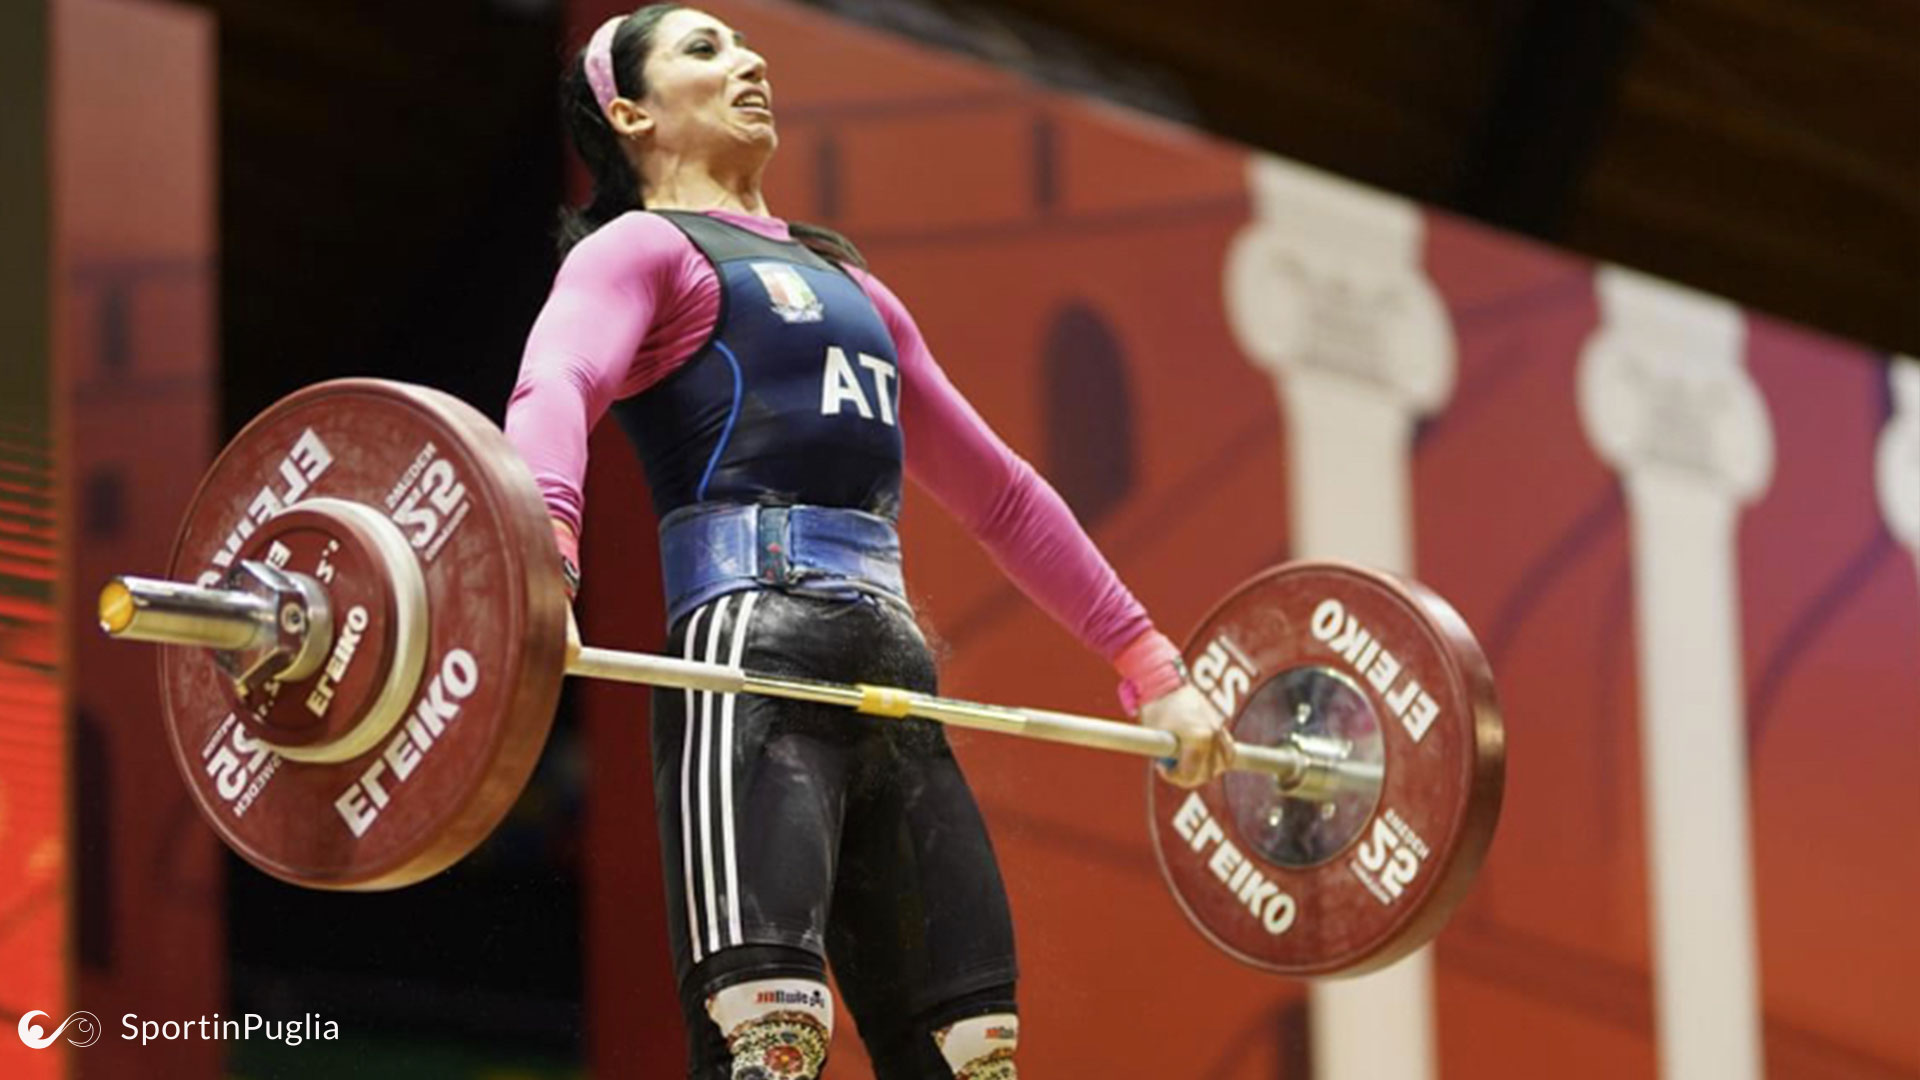 Atletica - Olimpiadi di Tokyo - Maria Grazia Alemanno